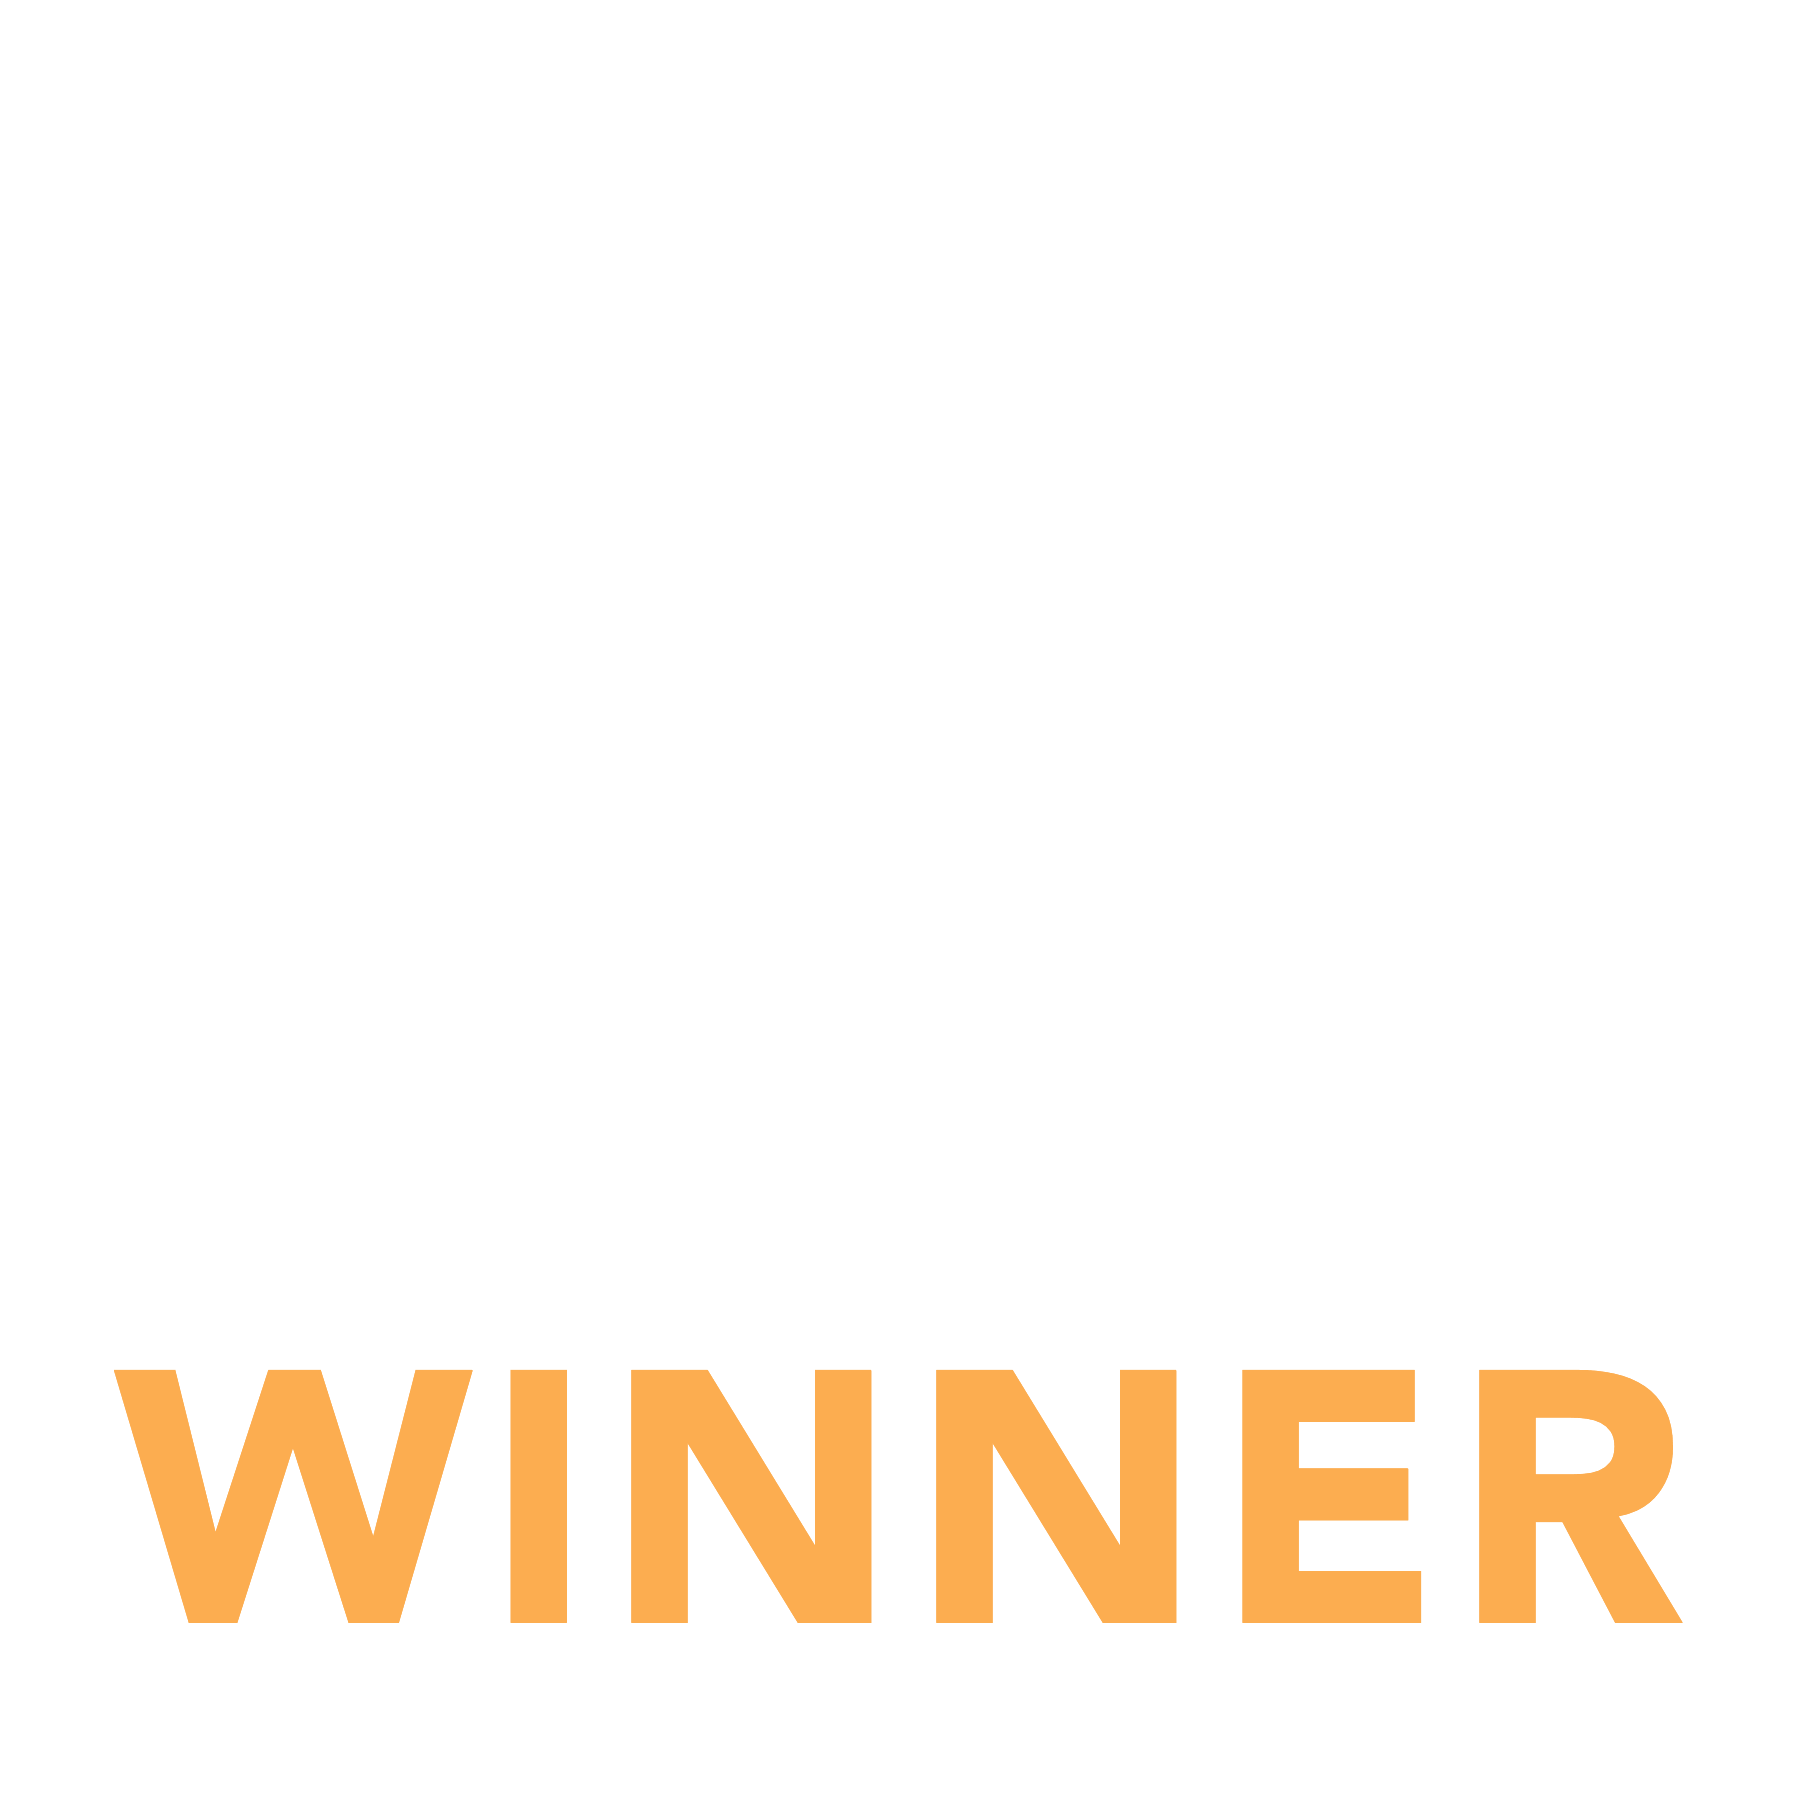 2022 Reed Award Winner